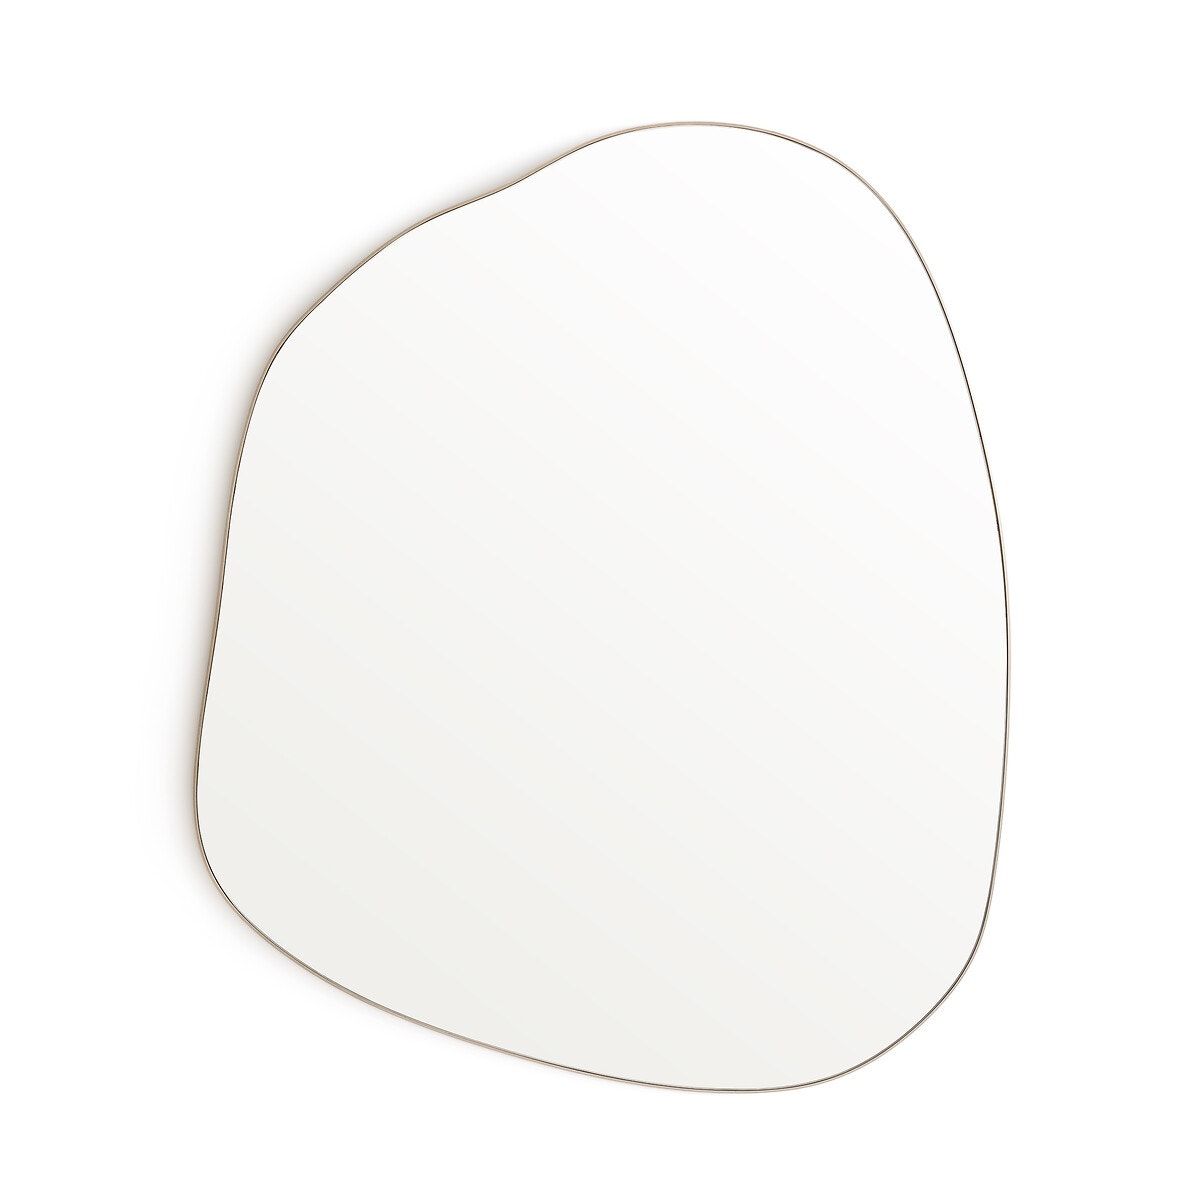 Καθρέφτης με ακανόνιστο σχήμα σε μέγεθος M, Ornica